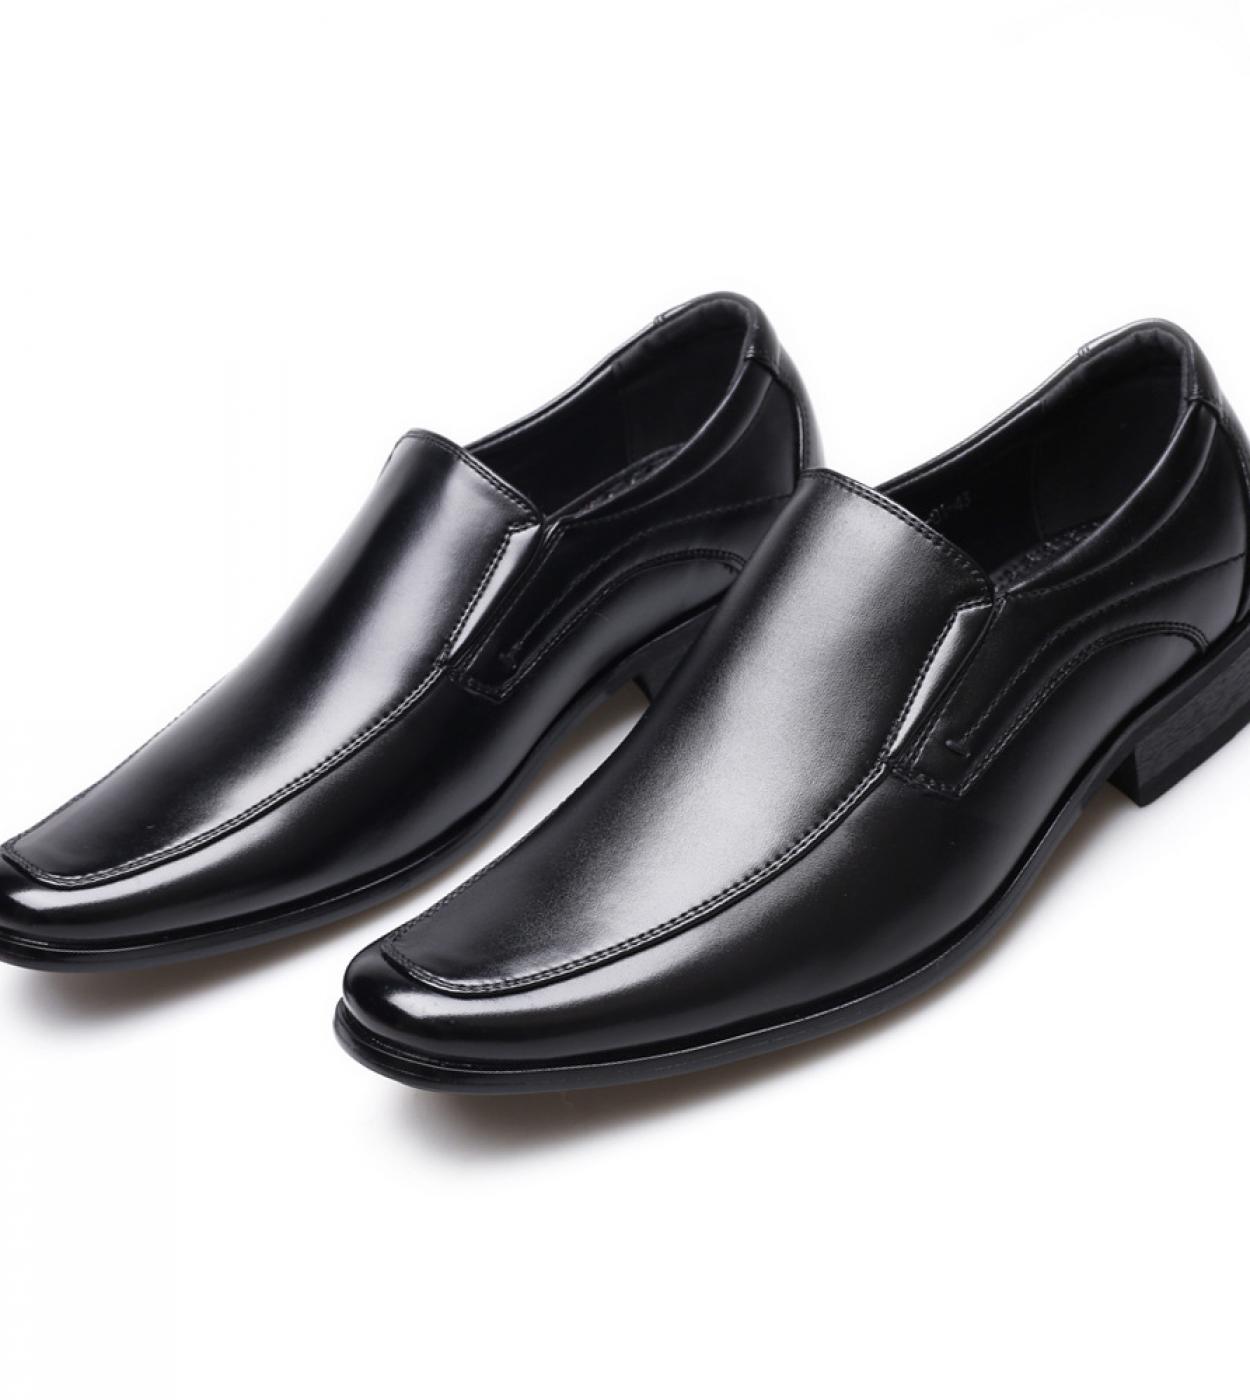 נעלי שמלת גברים עסקיות קלאסיות אופנה אלגנטיות נעלי חתונה רשמיות גברים להחליק למשרד נעלי אוקספורד לגברים יוקרתיות